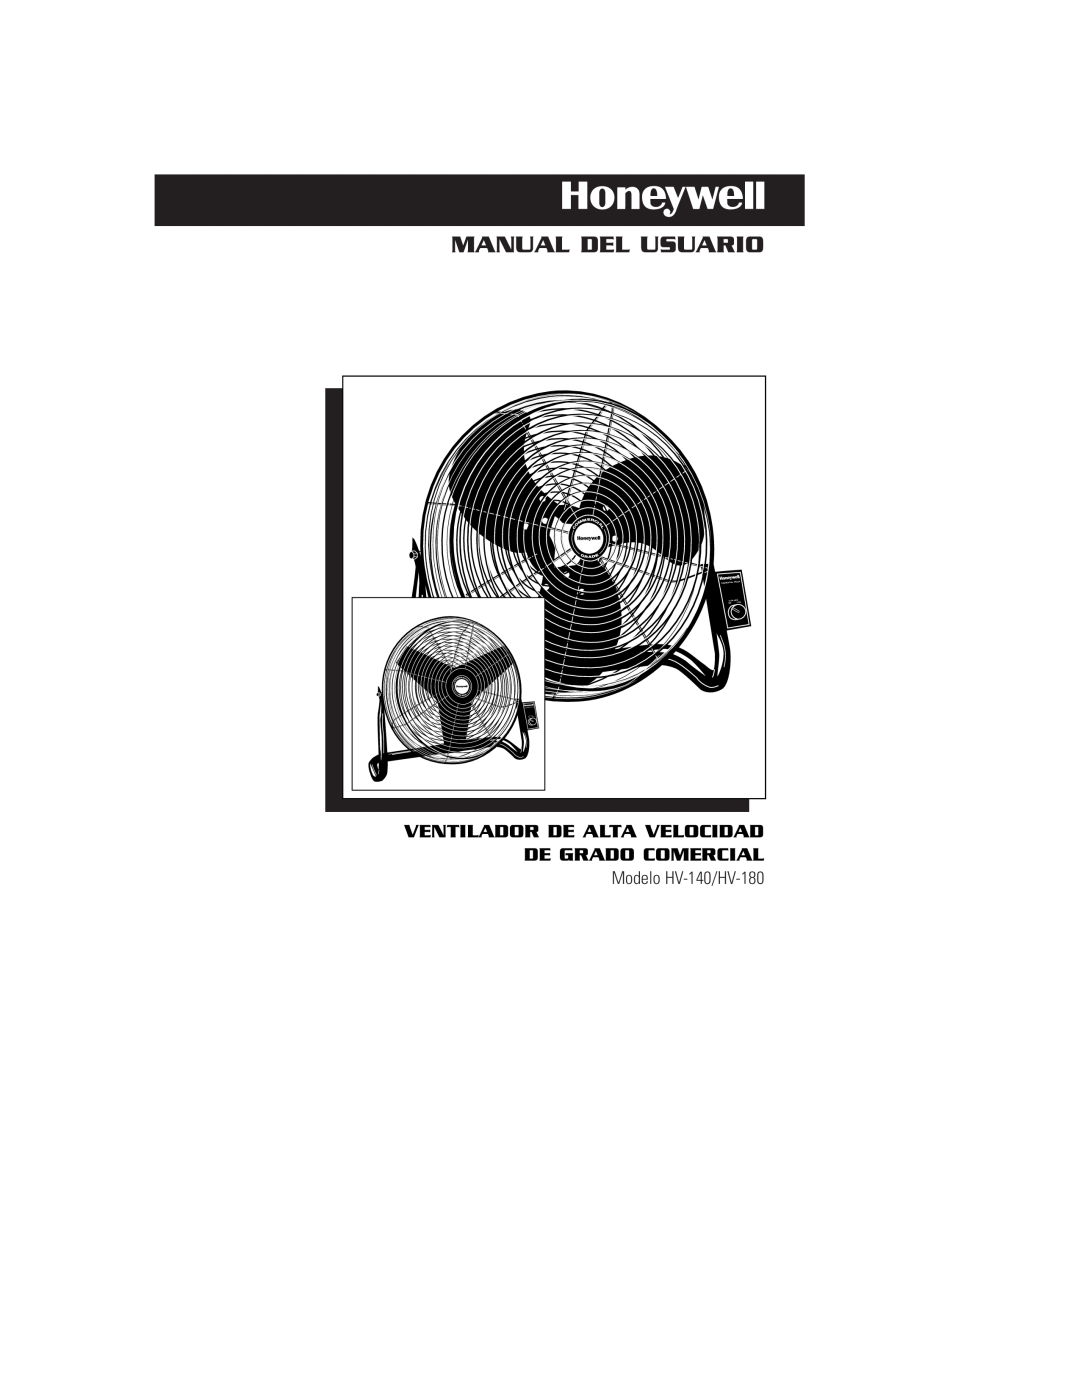 Honeywell HV180, HV140 Manual Del Usuario, Ventilador De Alta Velocidad De Grado Comercial, Modelo HV-140/HV-180, Gr Ad E 